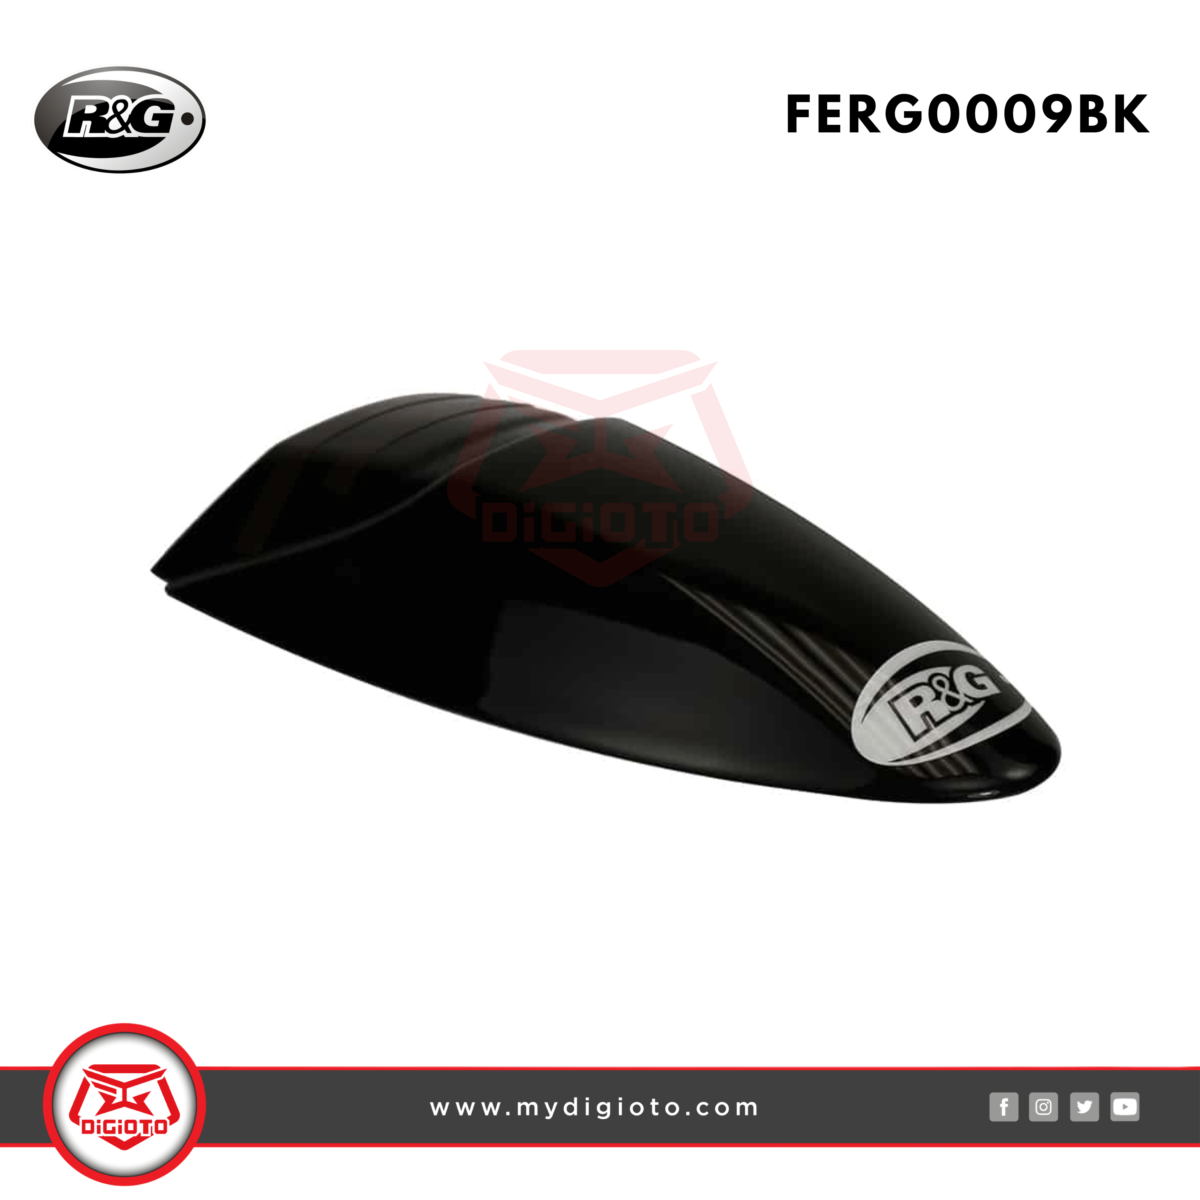 R&G FERG0009BK